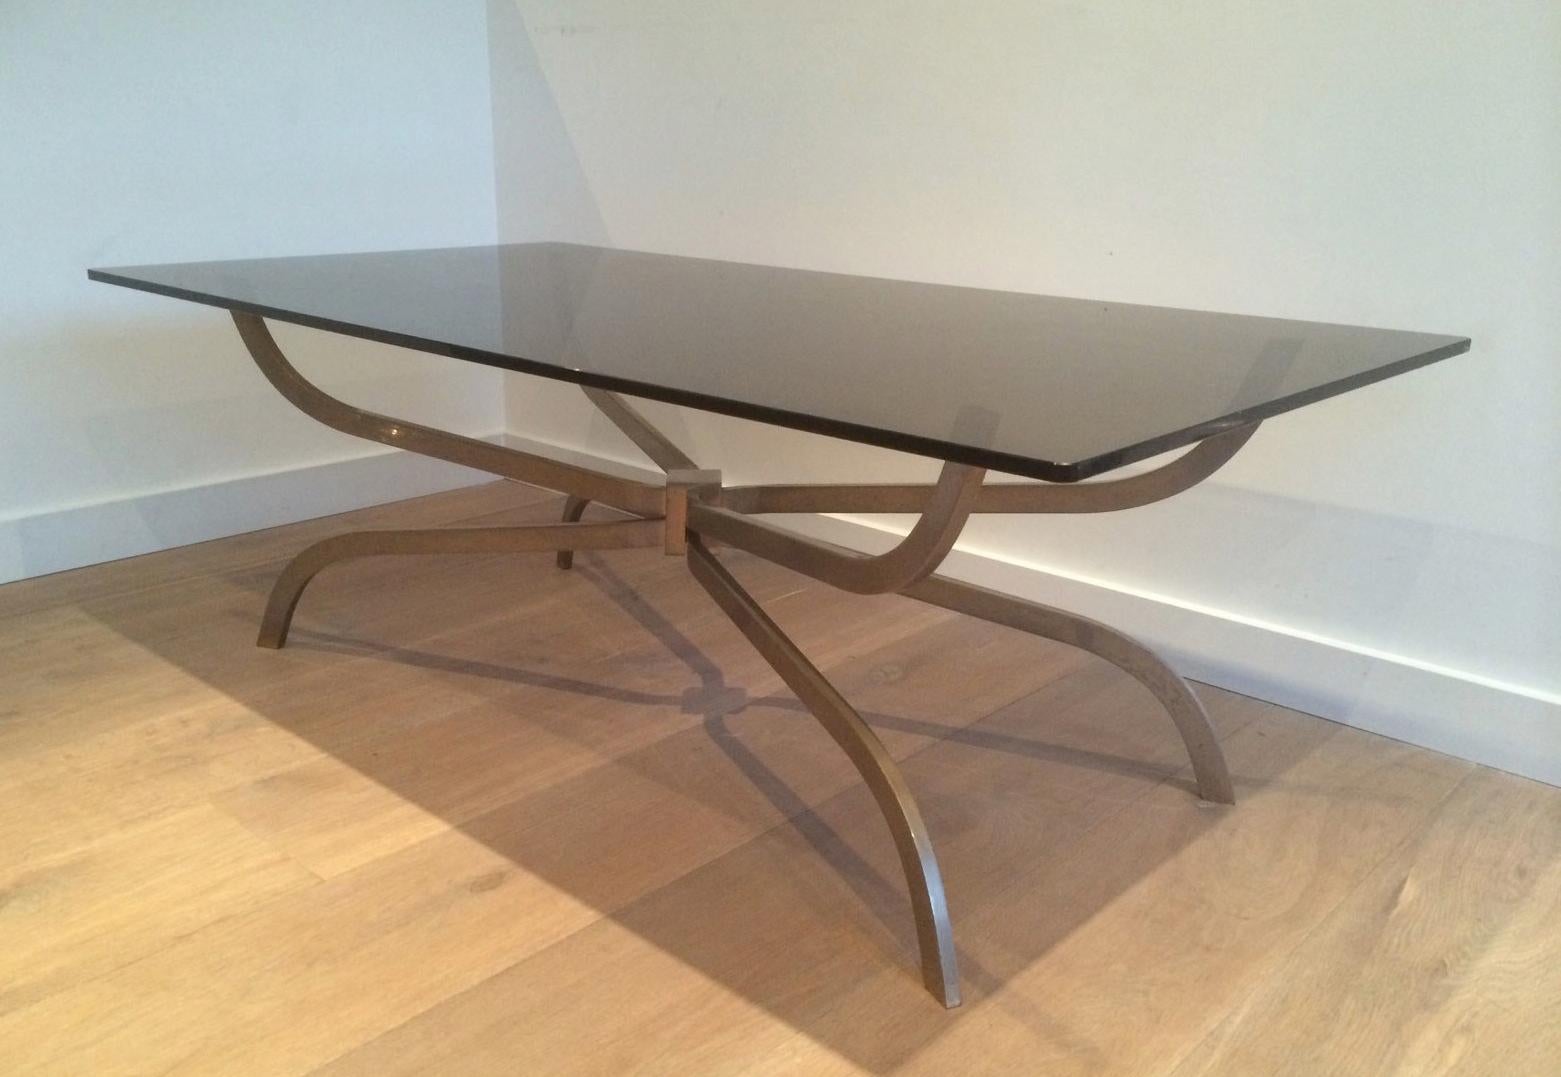 Cette intéressante table basse est fabriquée en acier brossé avec un plateau en verre fumé. Il s'agit d'un modèle du célèbre designer français Maison Charles. La qualité est très bonne, circa 1960.